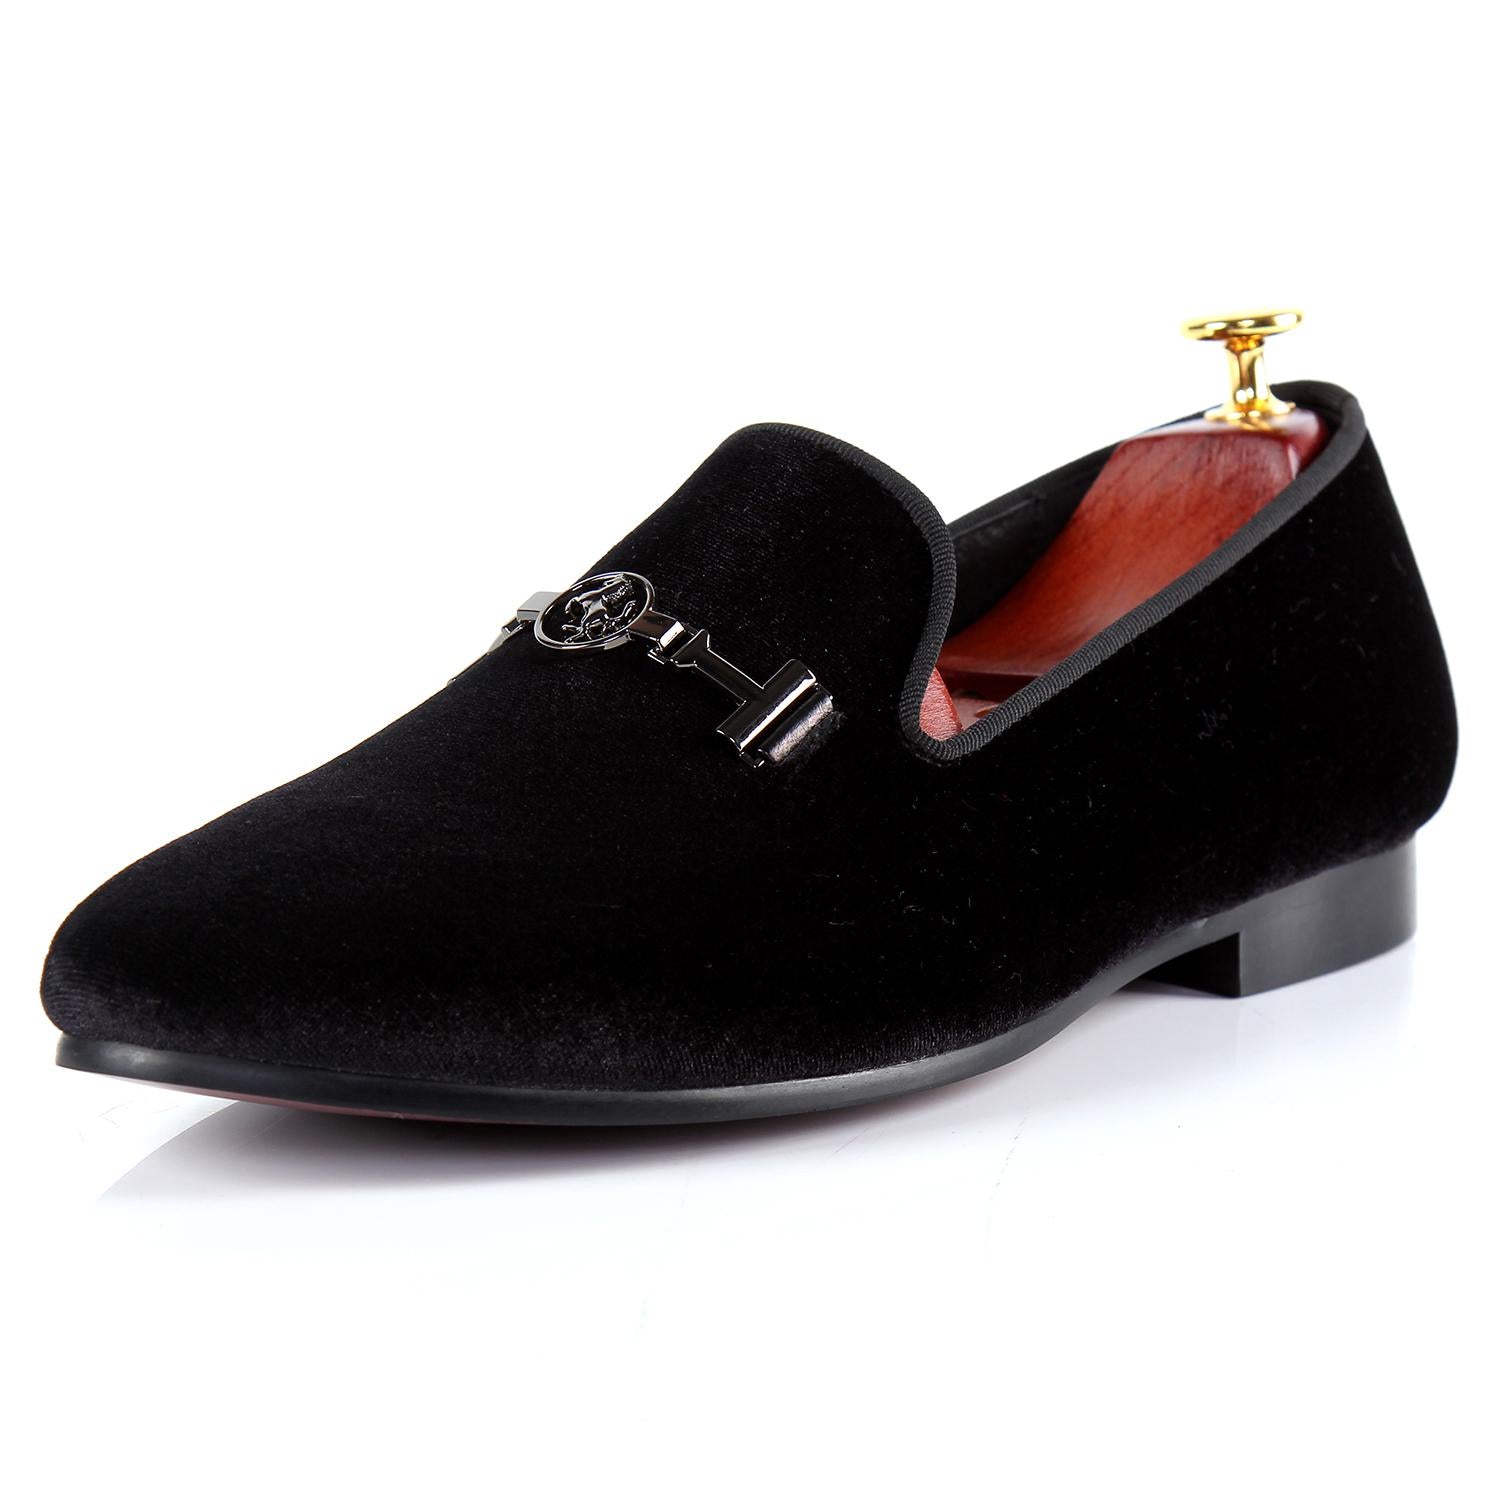 velvet black dress shoes